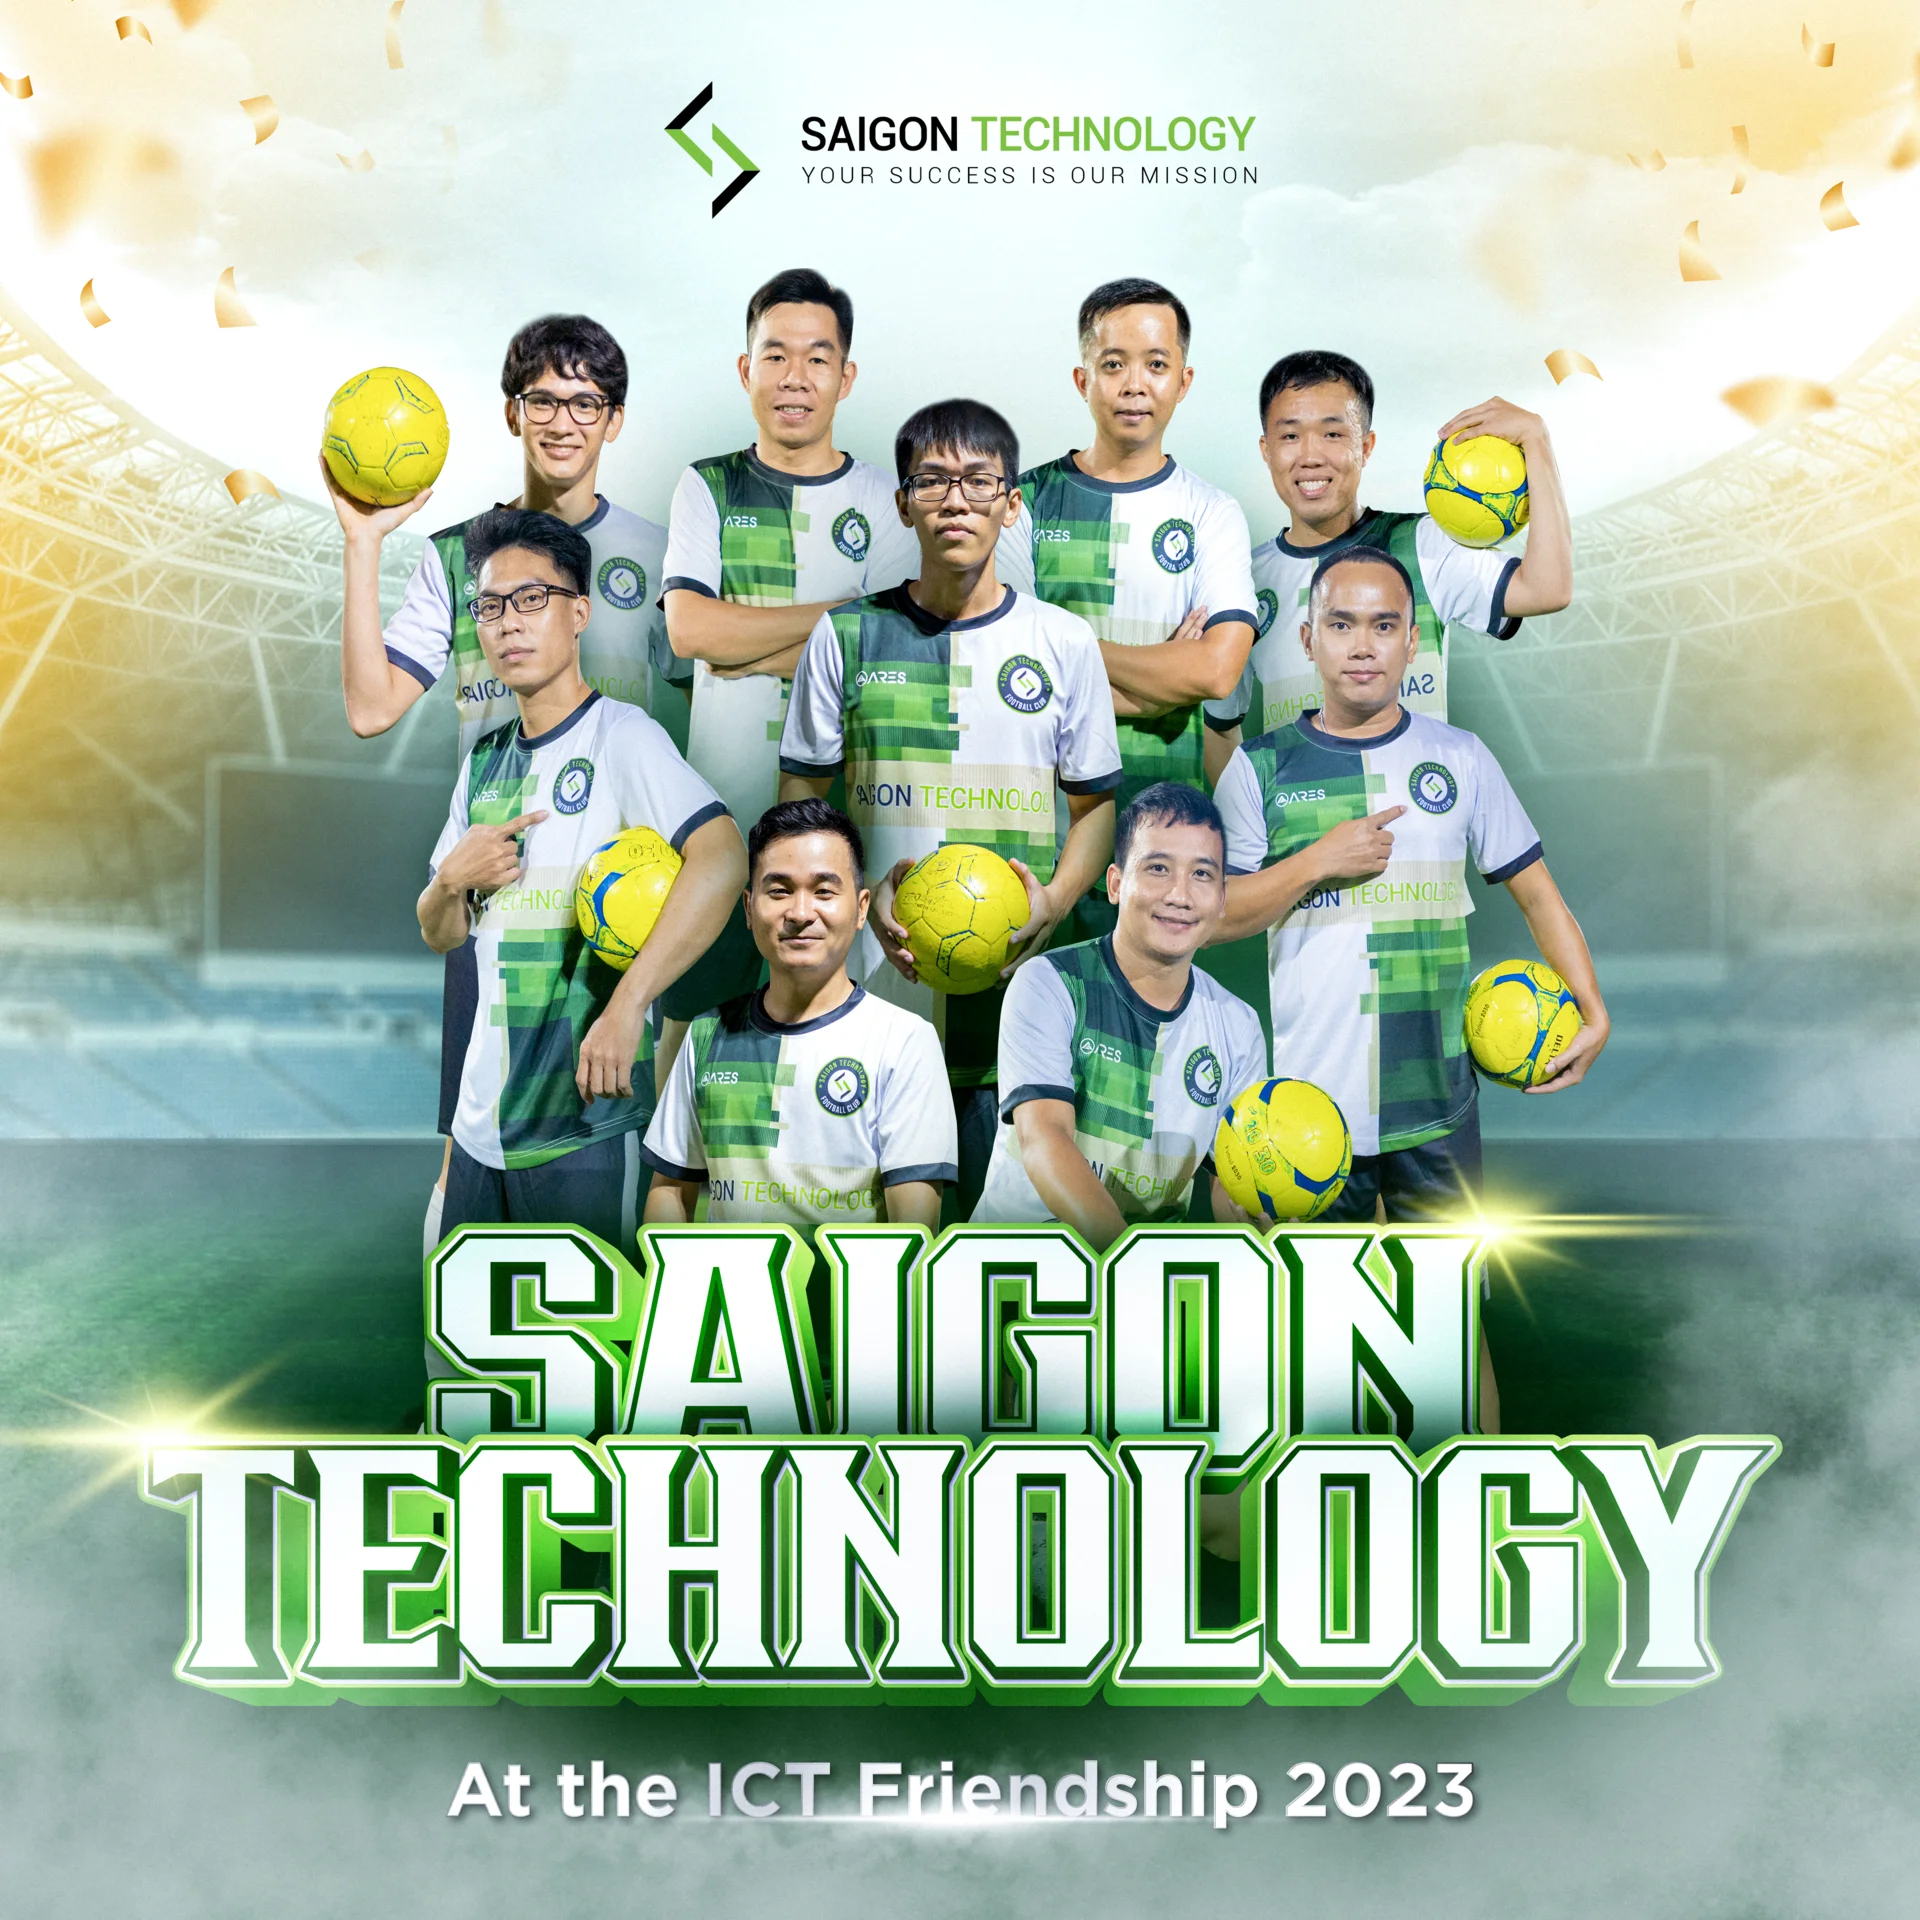 Gặp gỡ đội hình của Saigon Technology tại ITC Friendship 2023